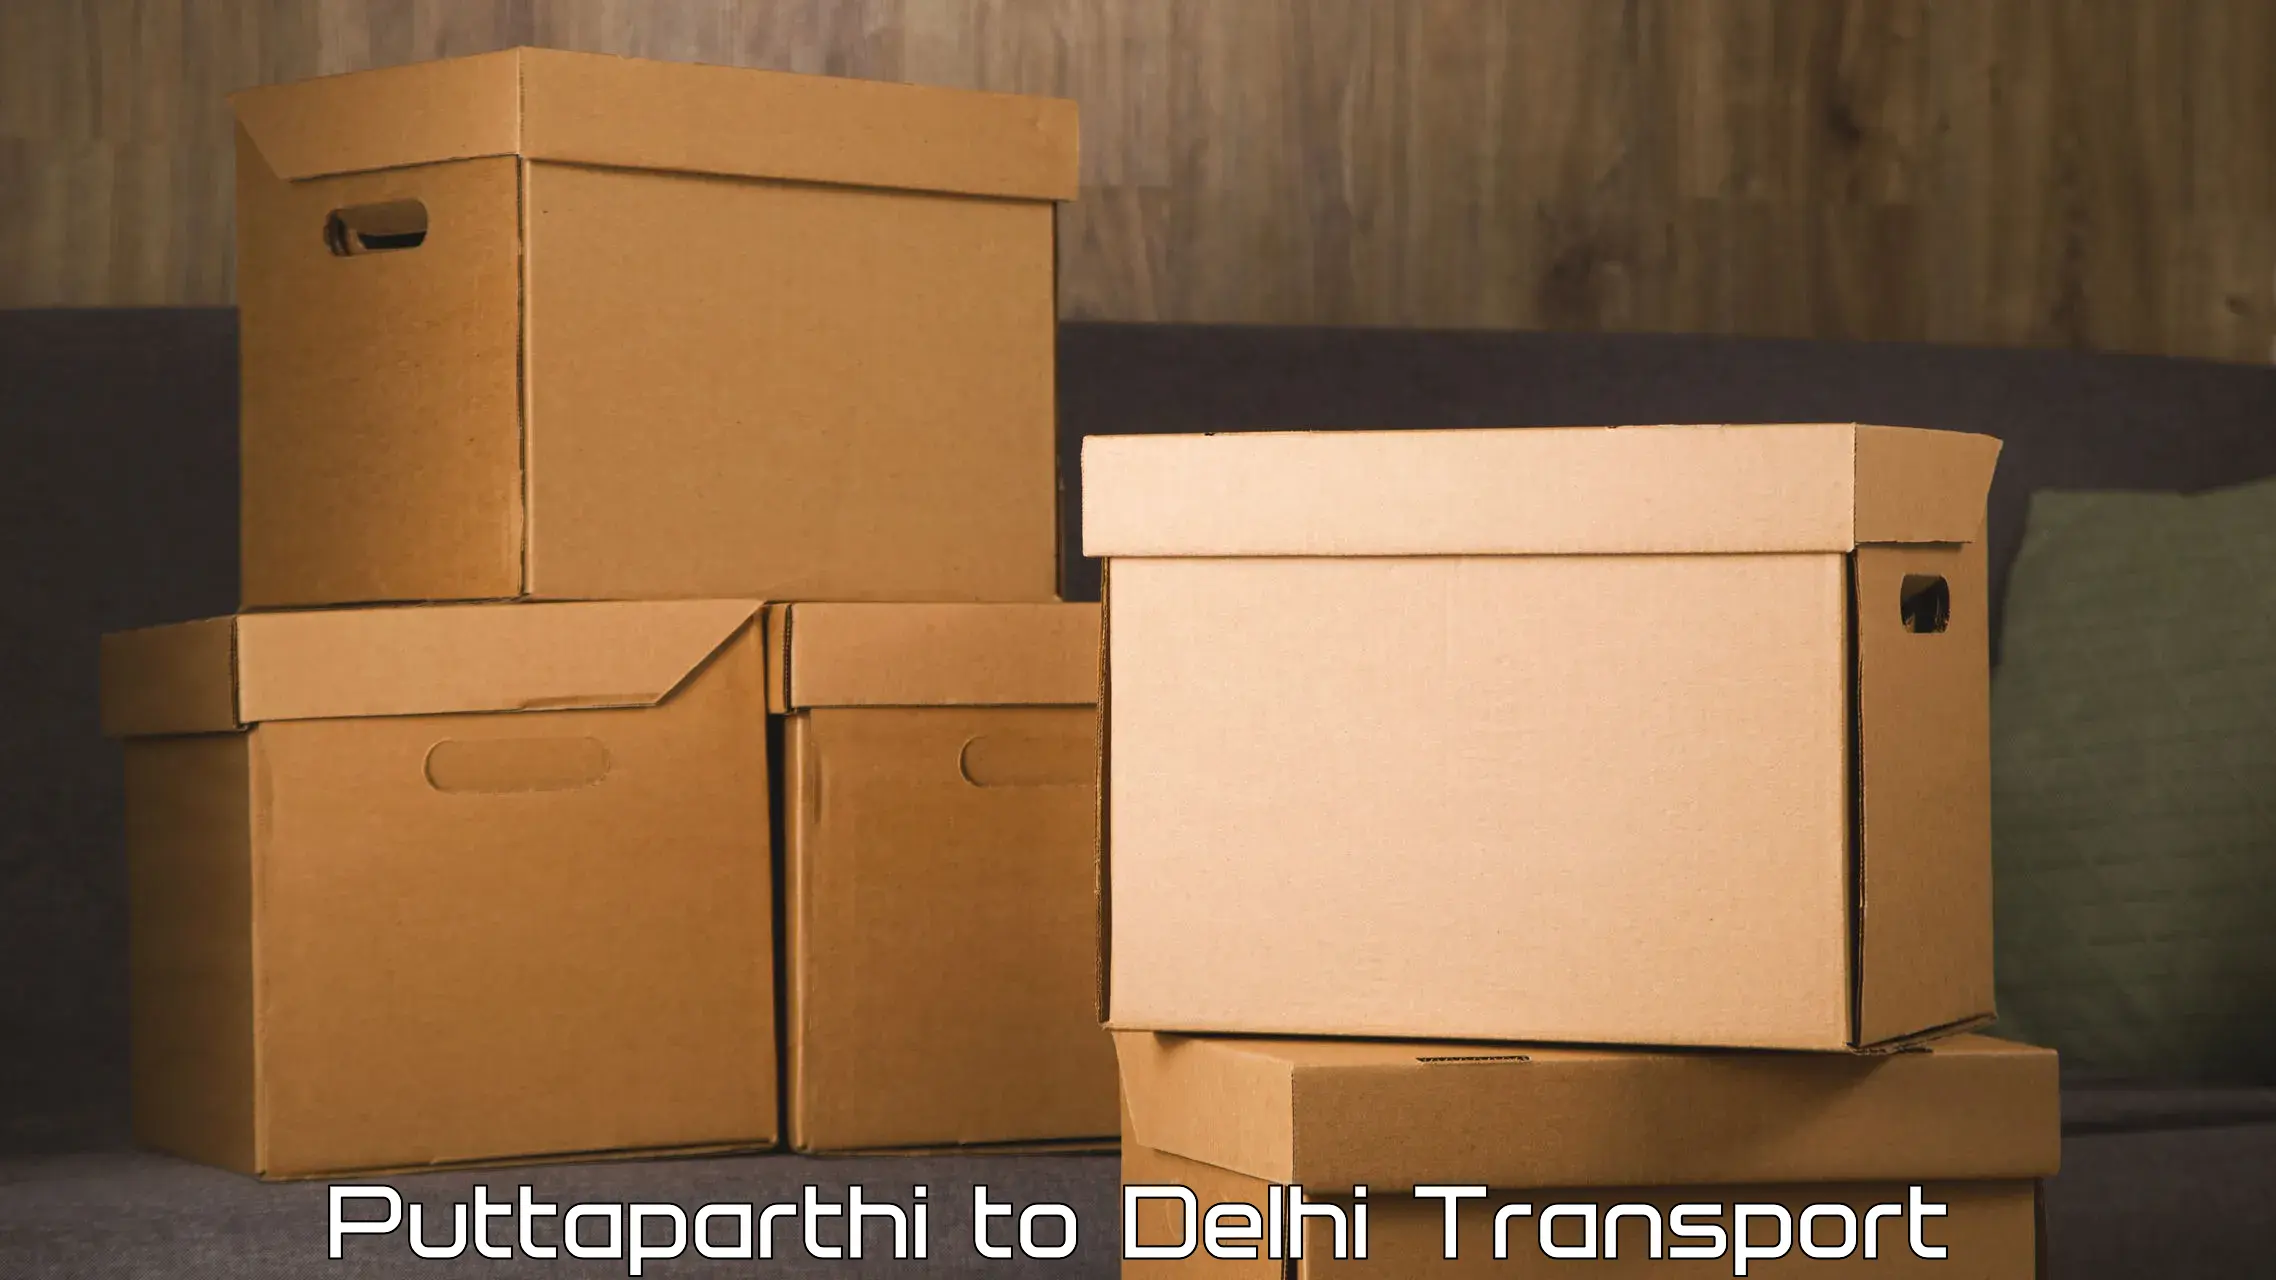 Furniture transport service Puttaparthi to Ramesh Nagar